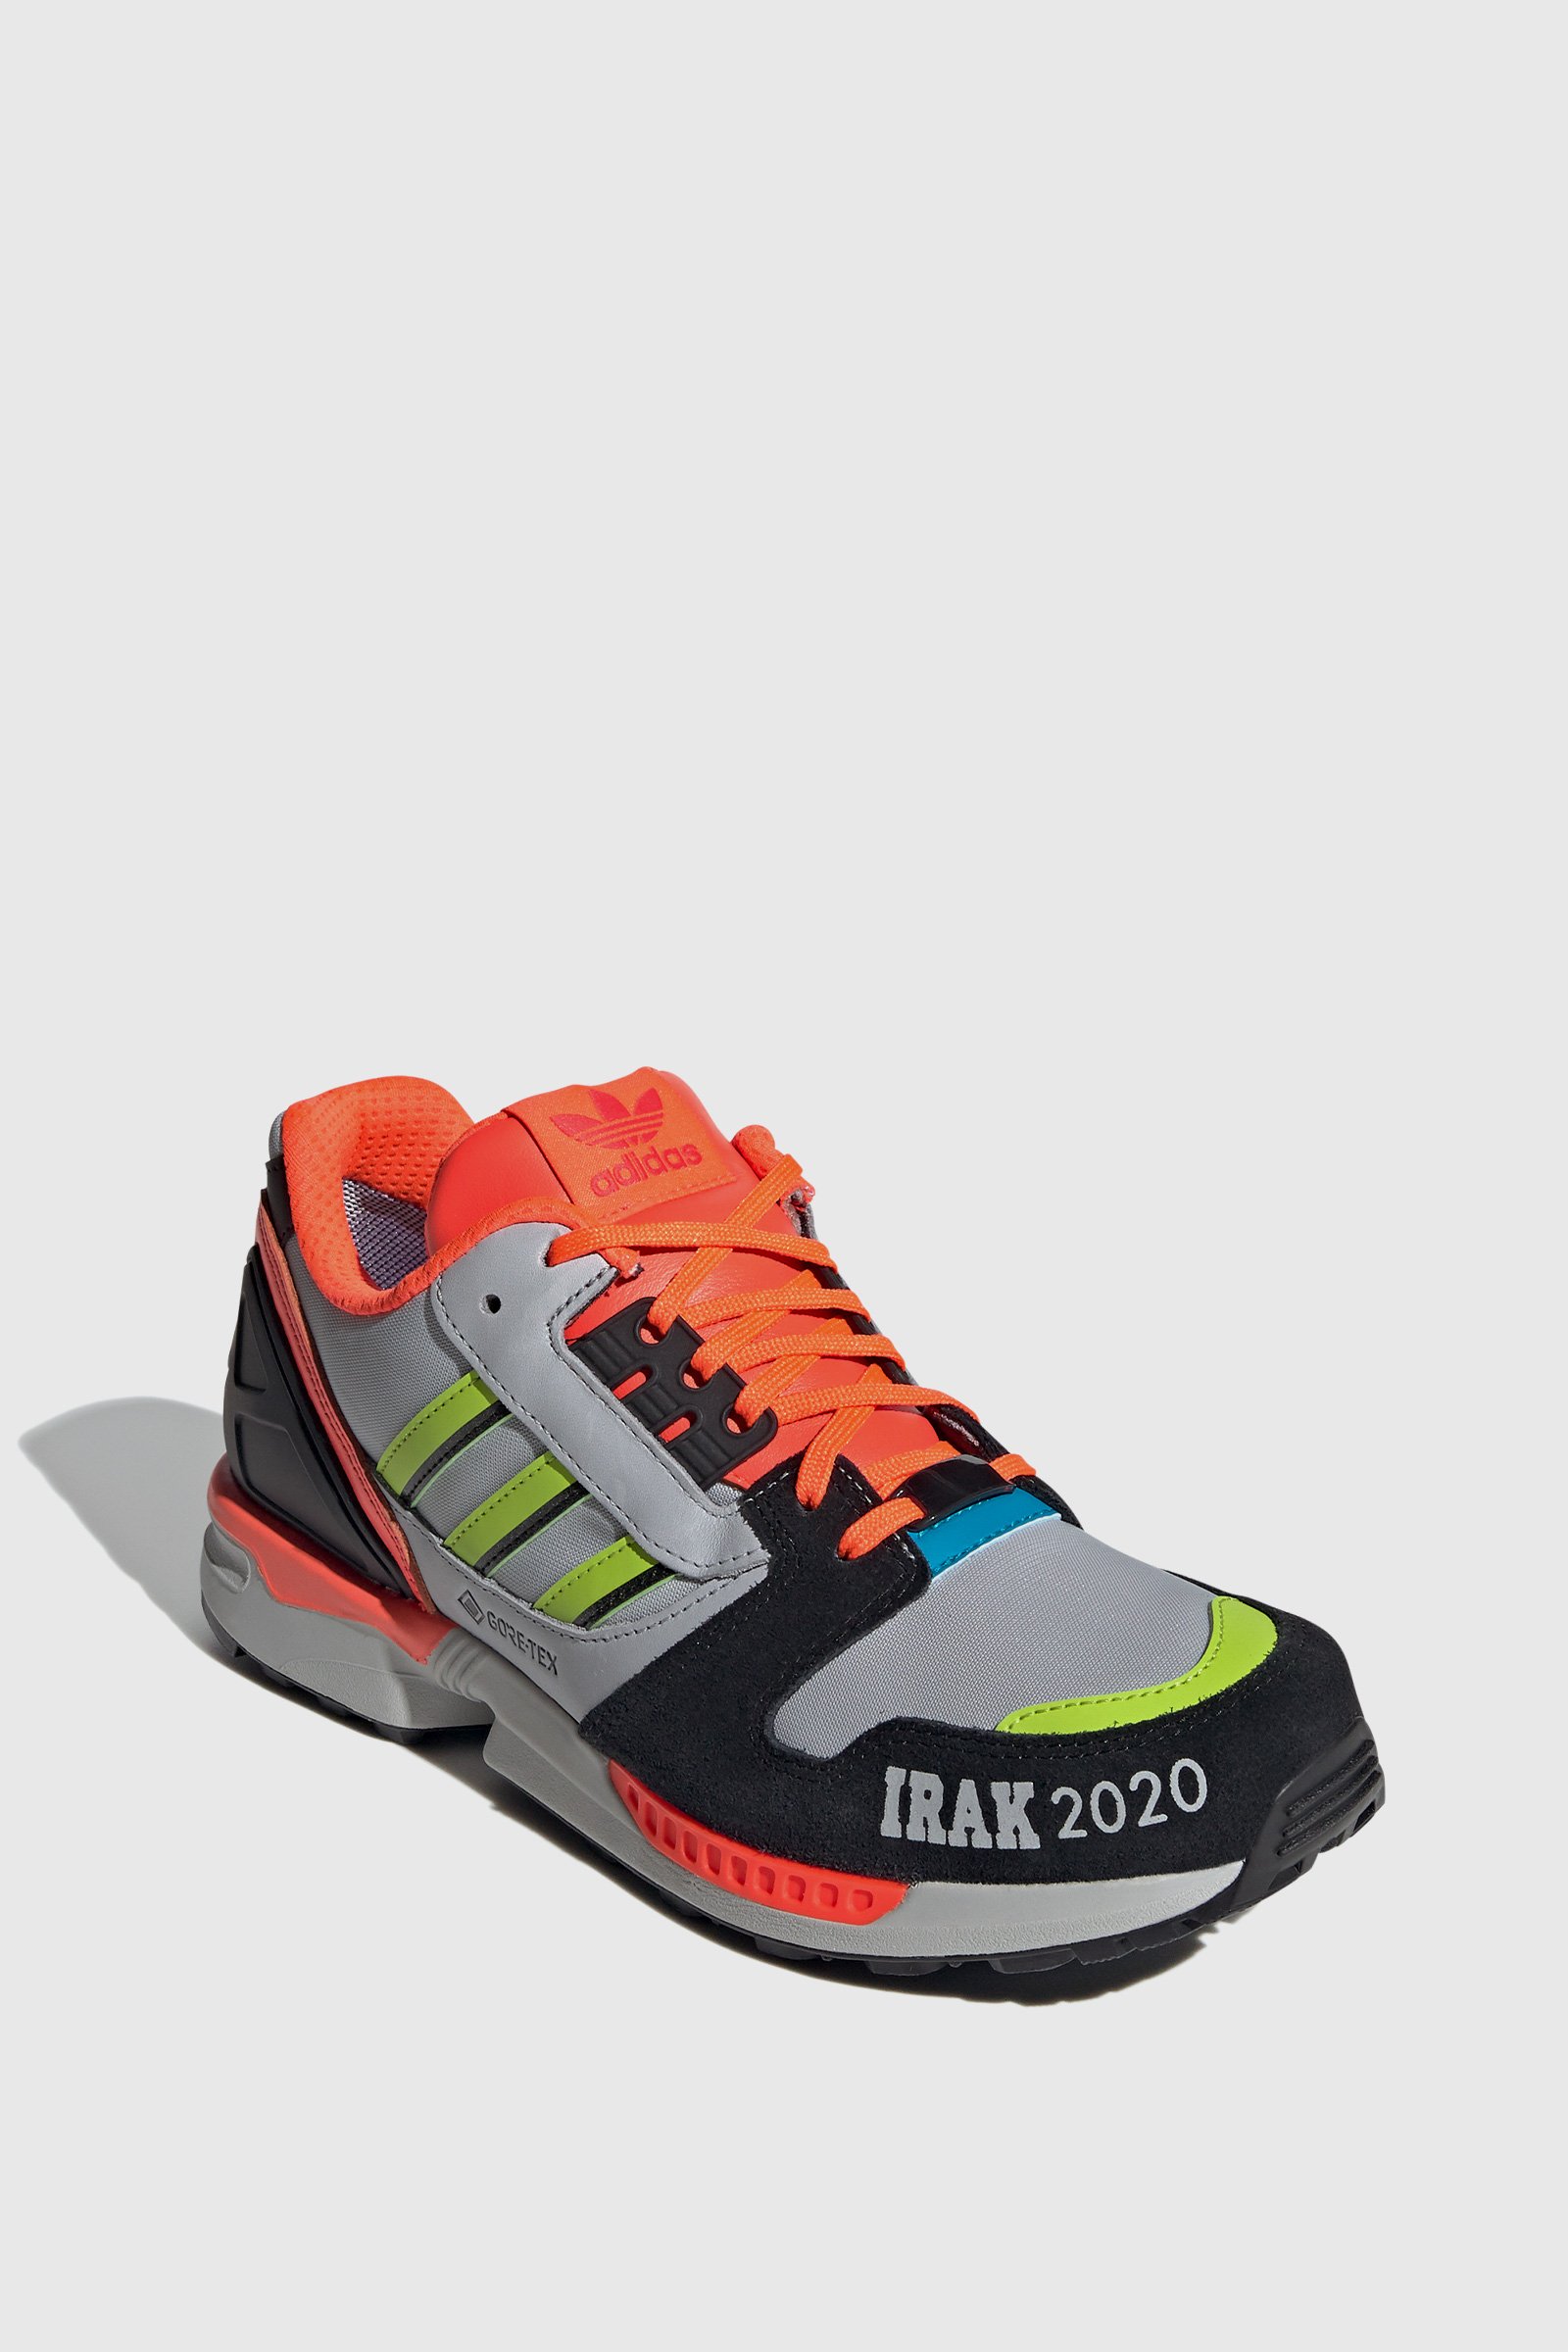 zx 8000 irak shoes